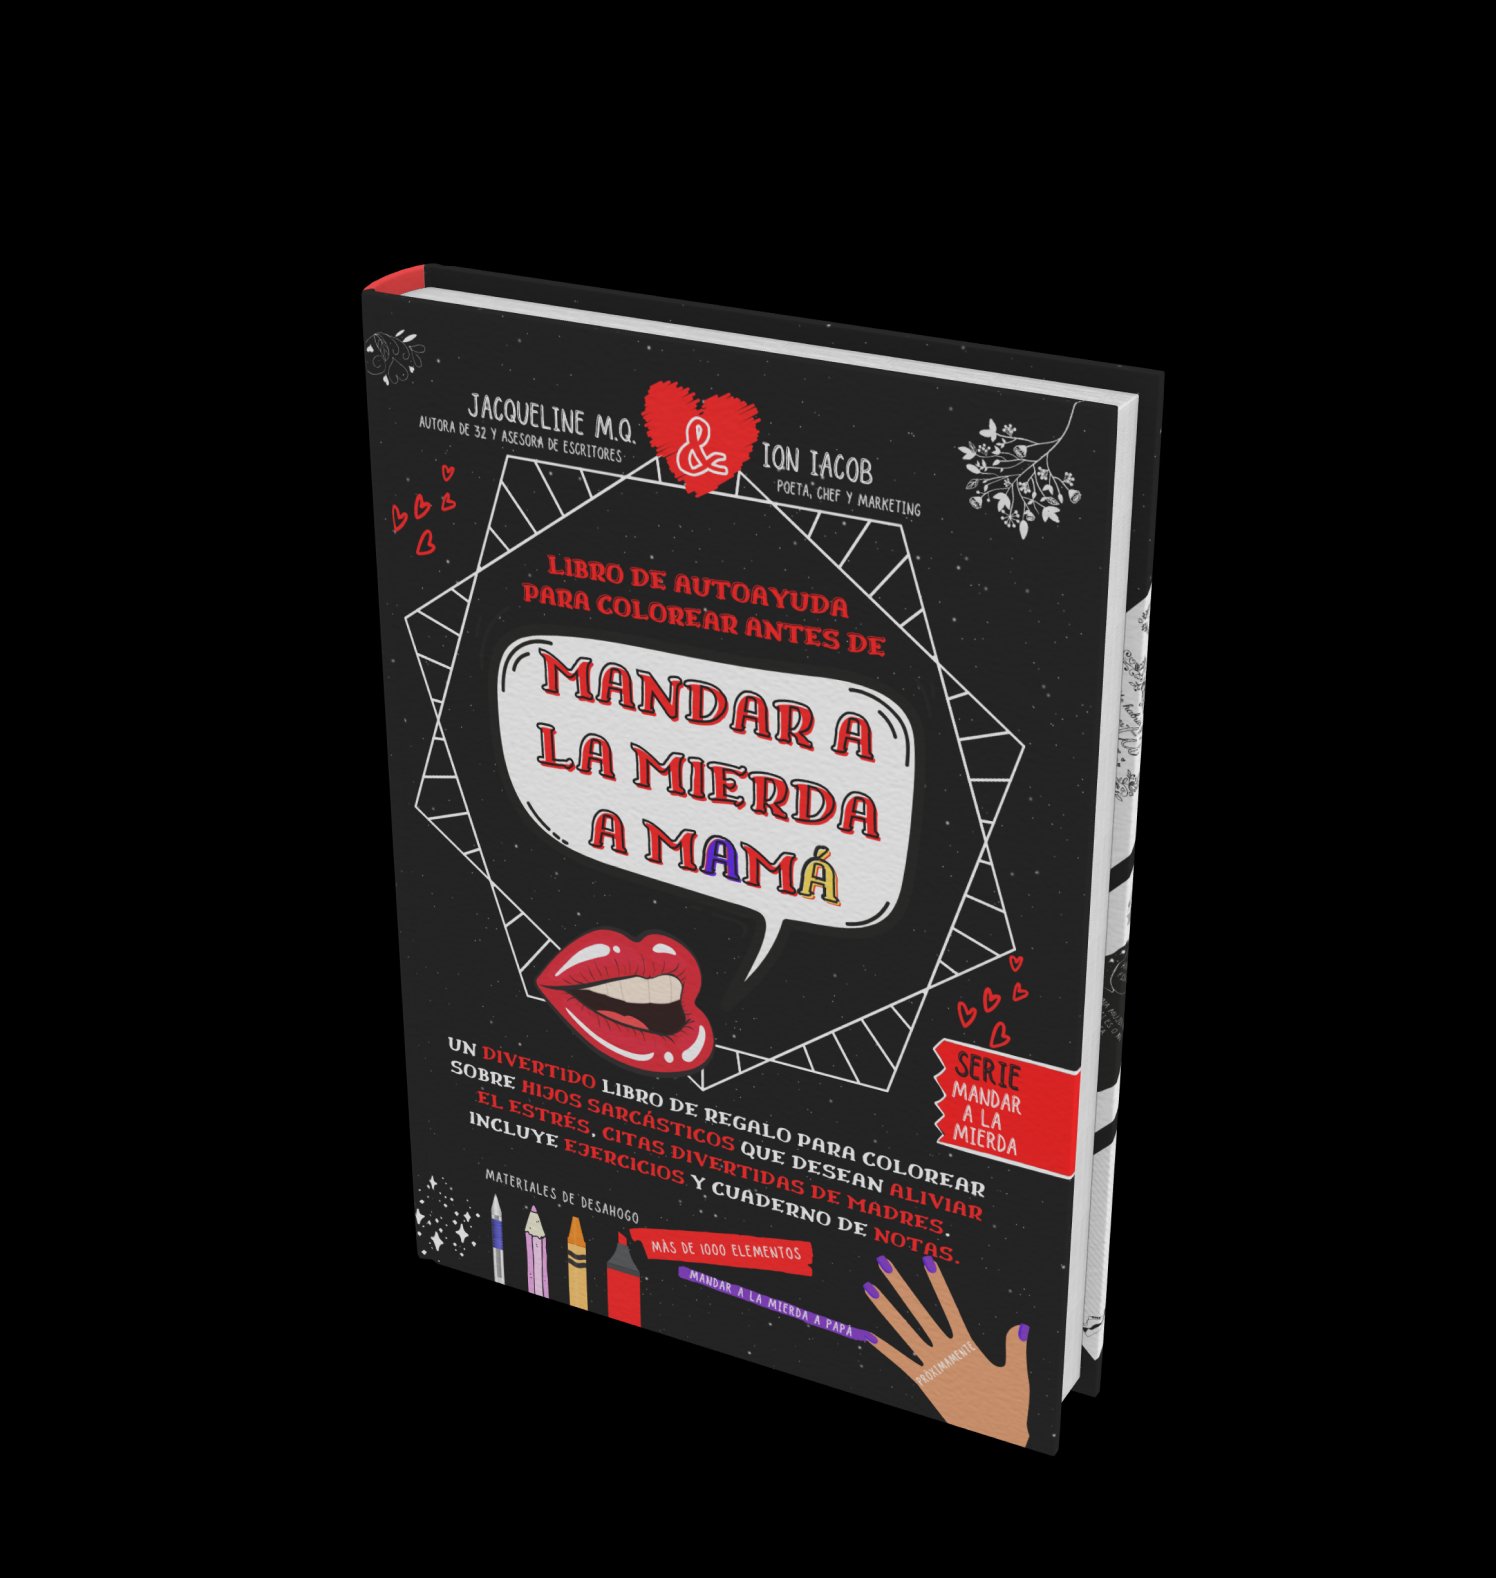 Featured image for “Libro De Autoayuda Para Colorear Antes De Mandar A La Mierda A Mamá”